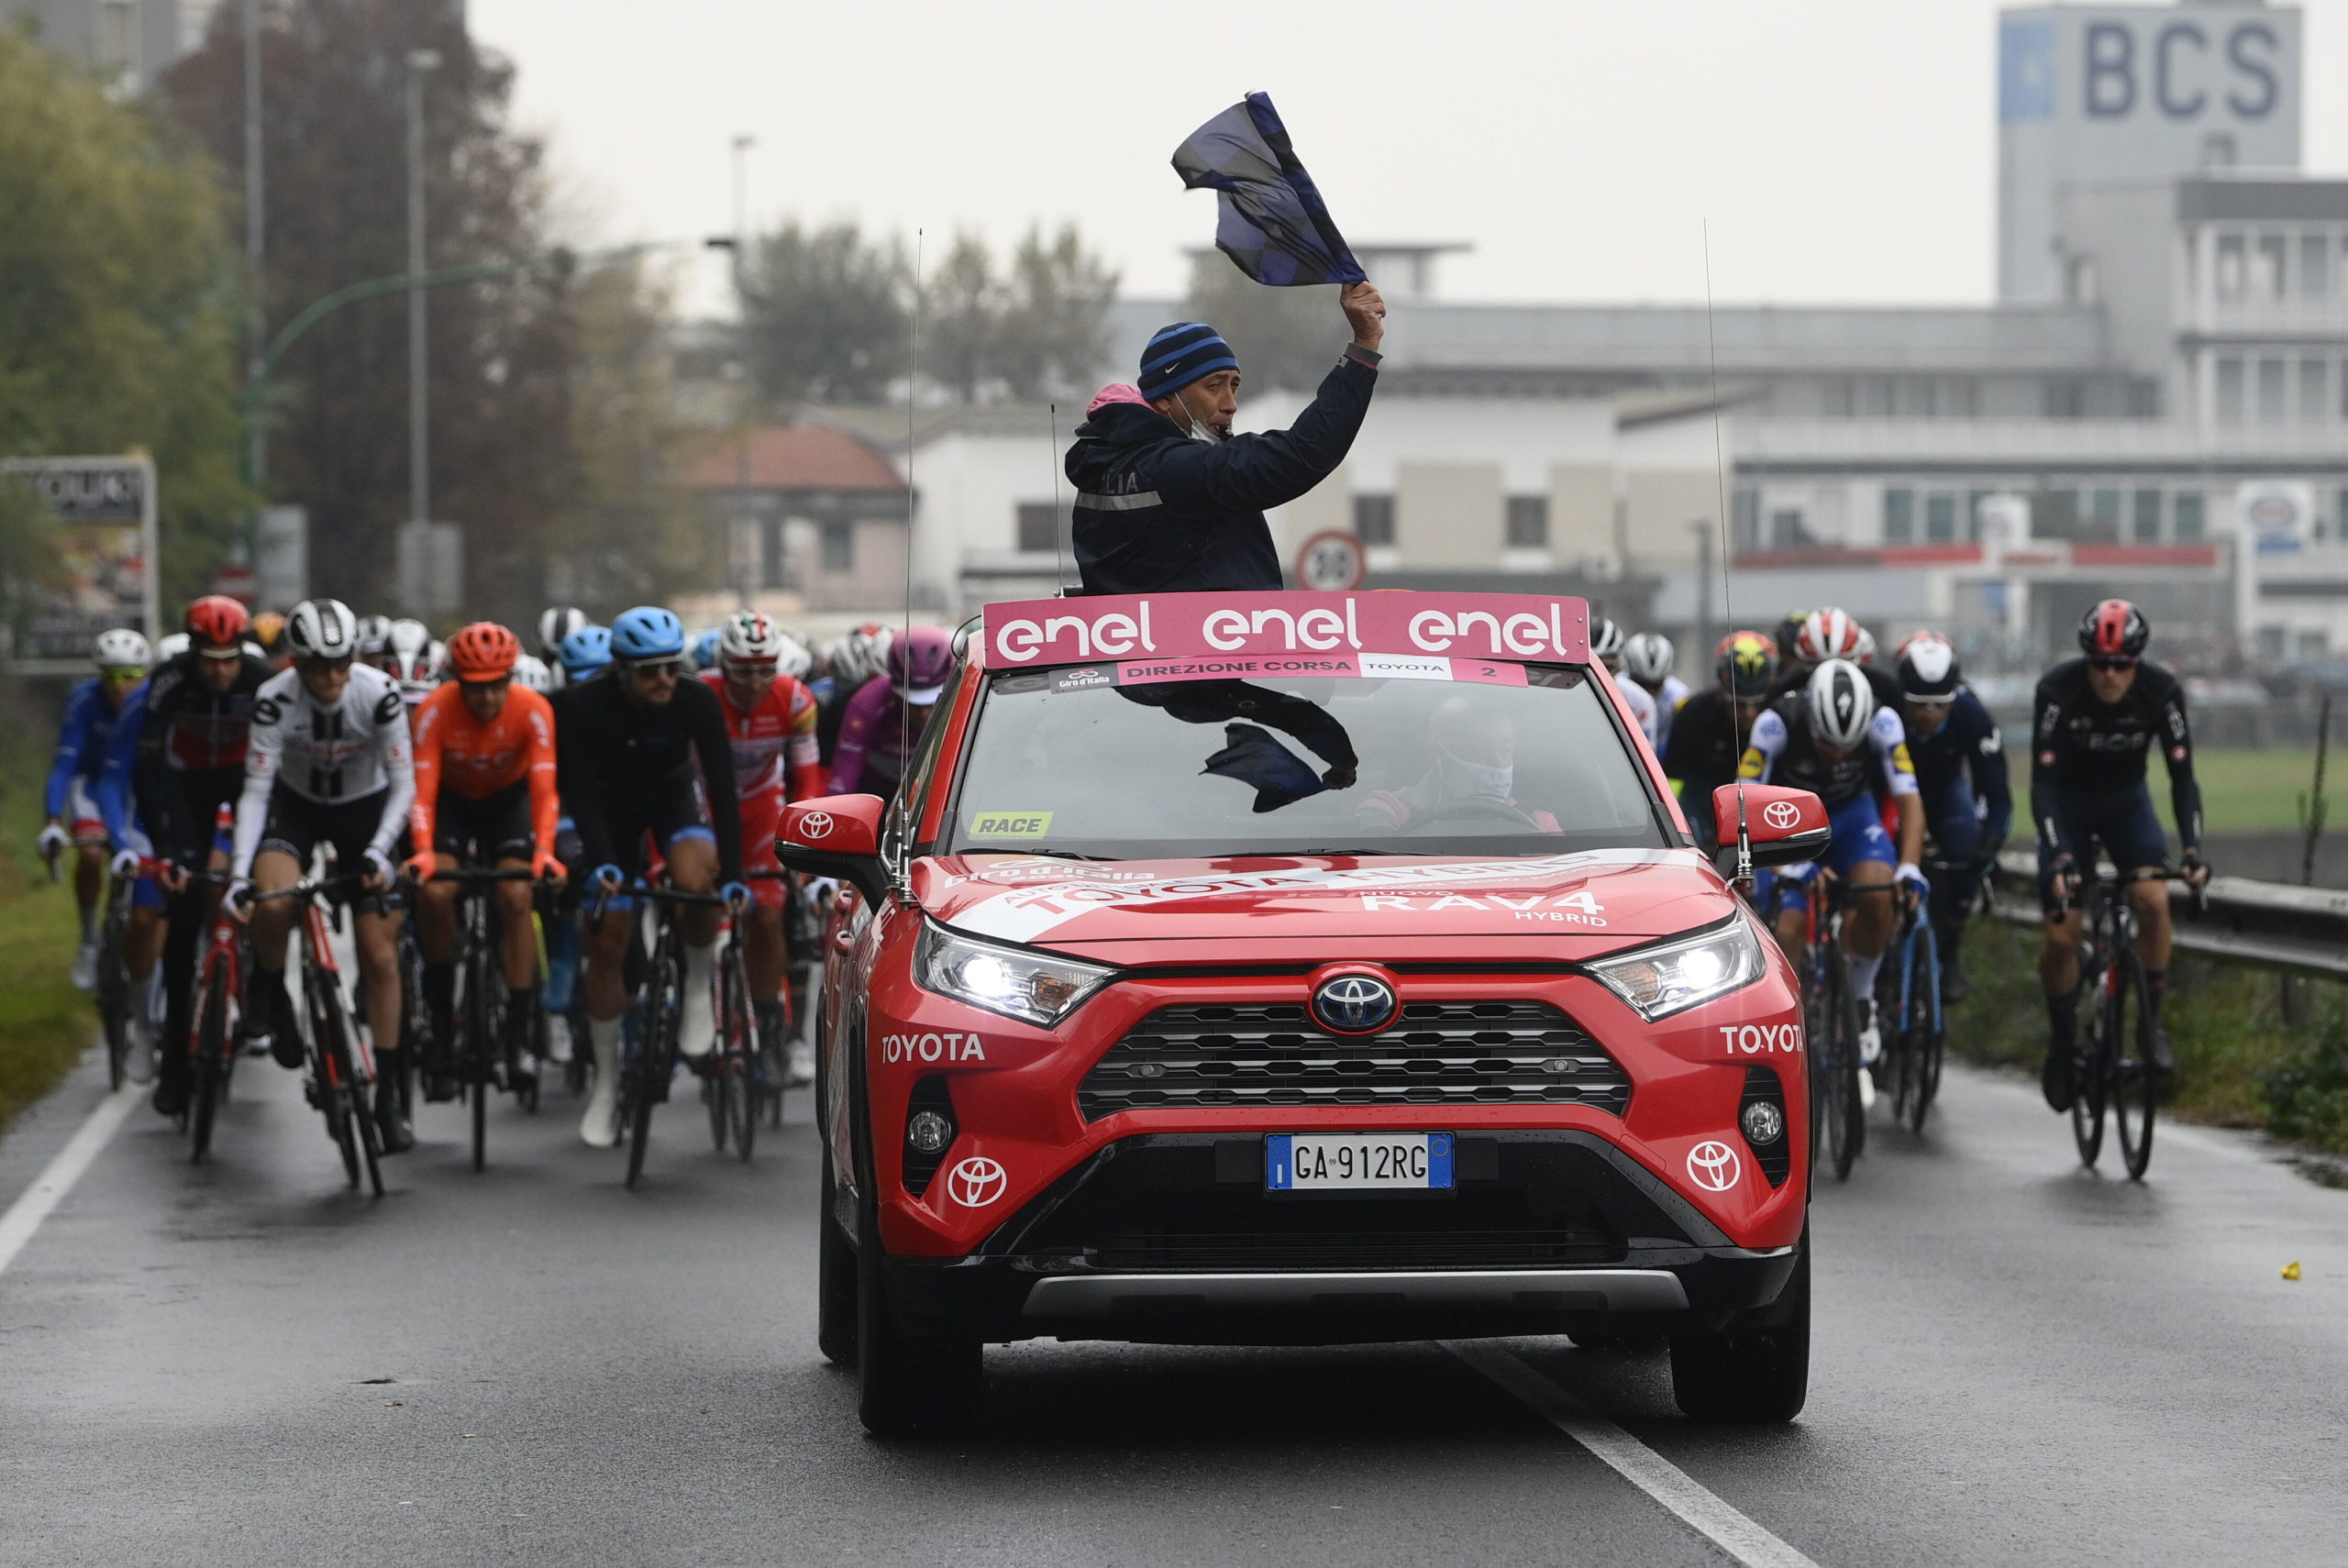 Giro-etape forkortet efter rytterprotest